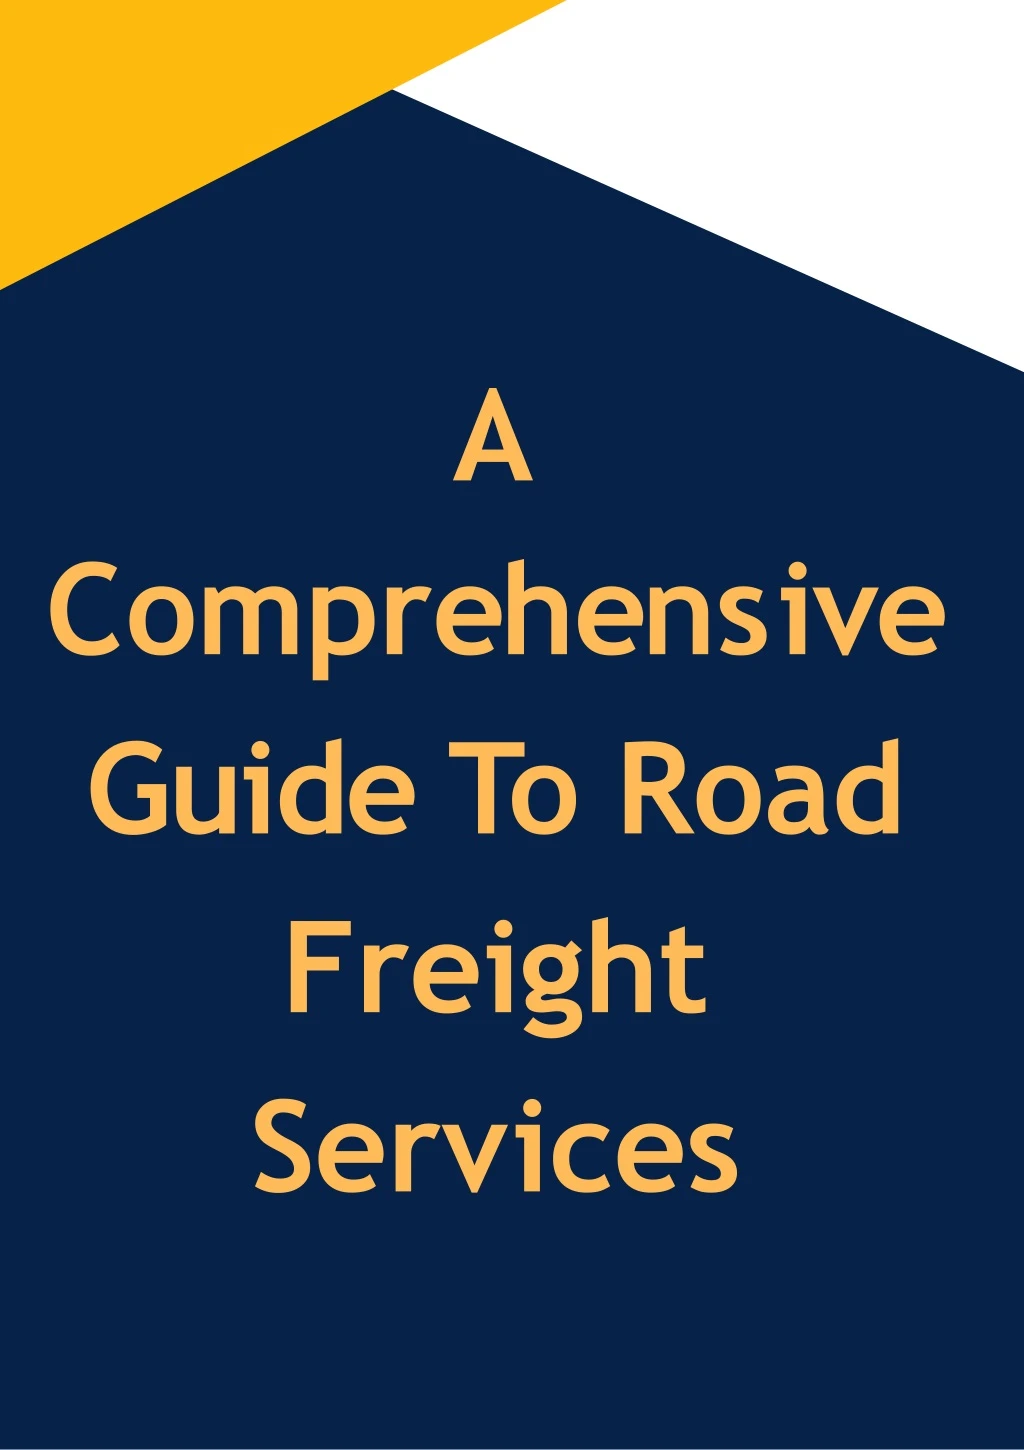 a c o m p r e h e n s i v e guide to road freight